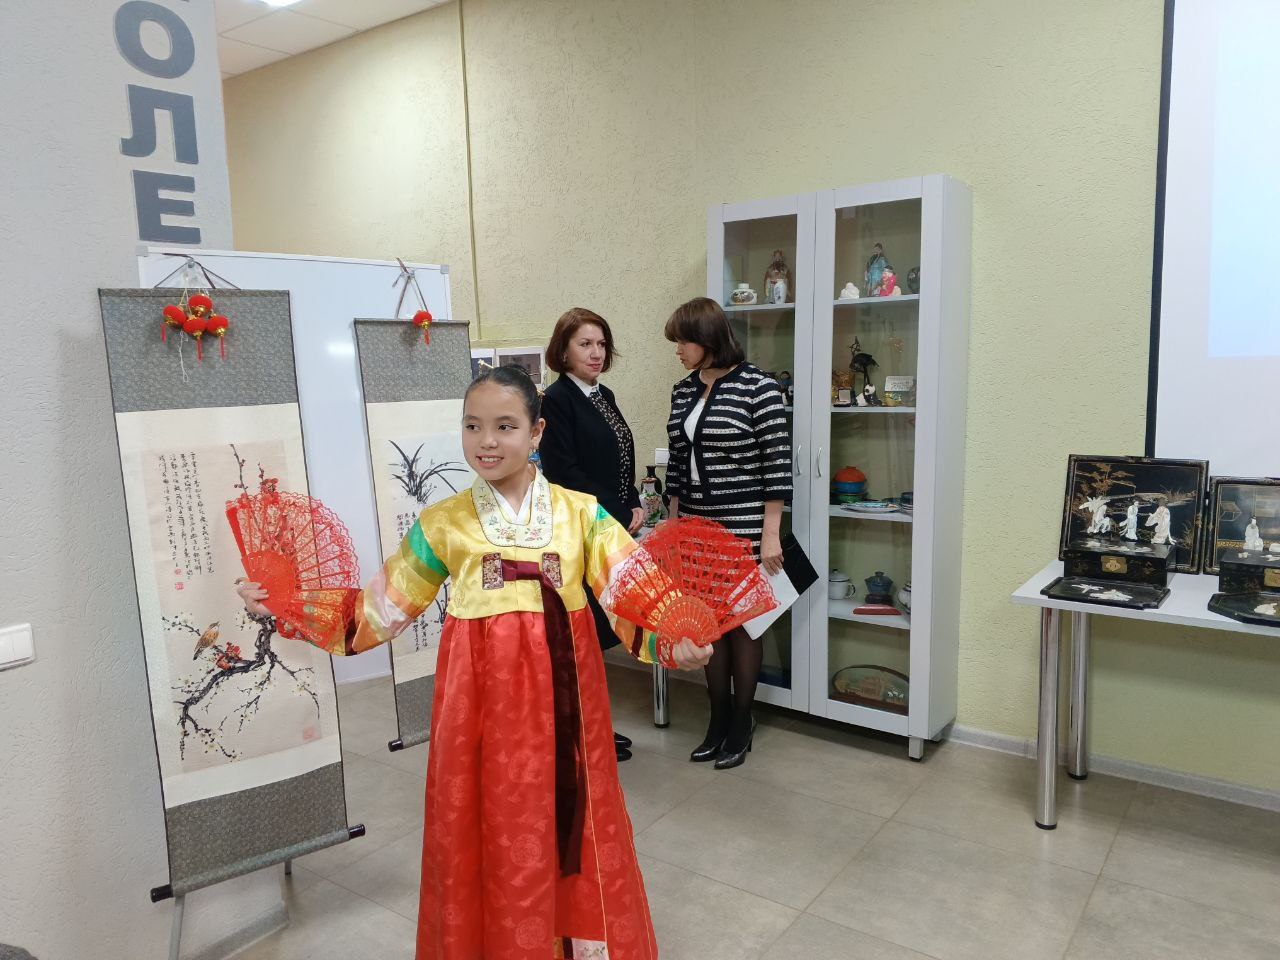 выставка китайской культуры